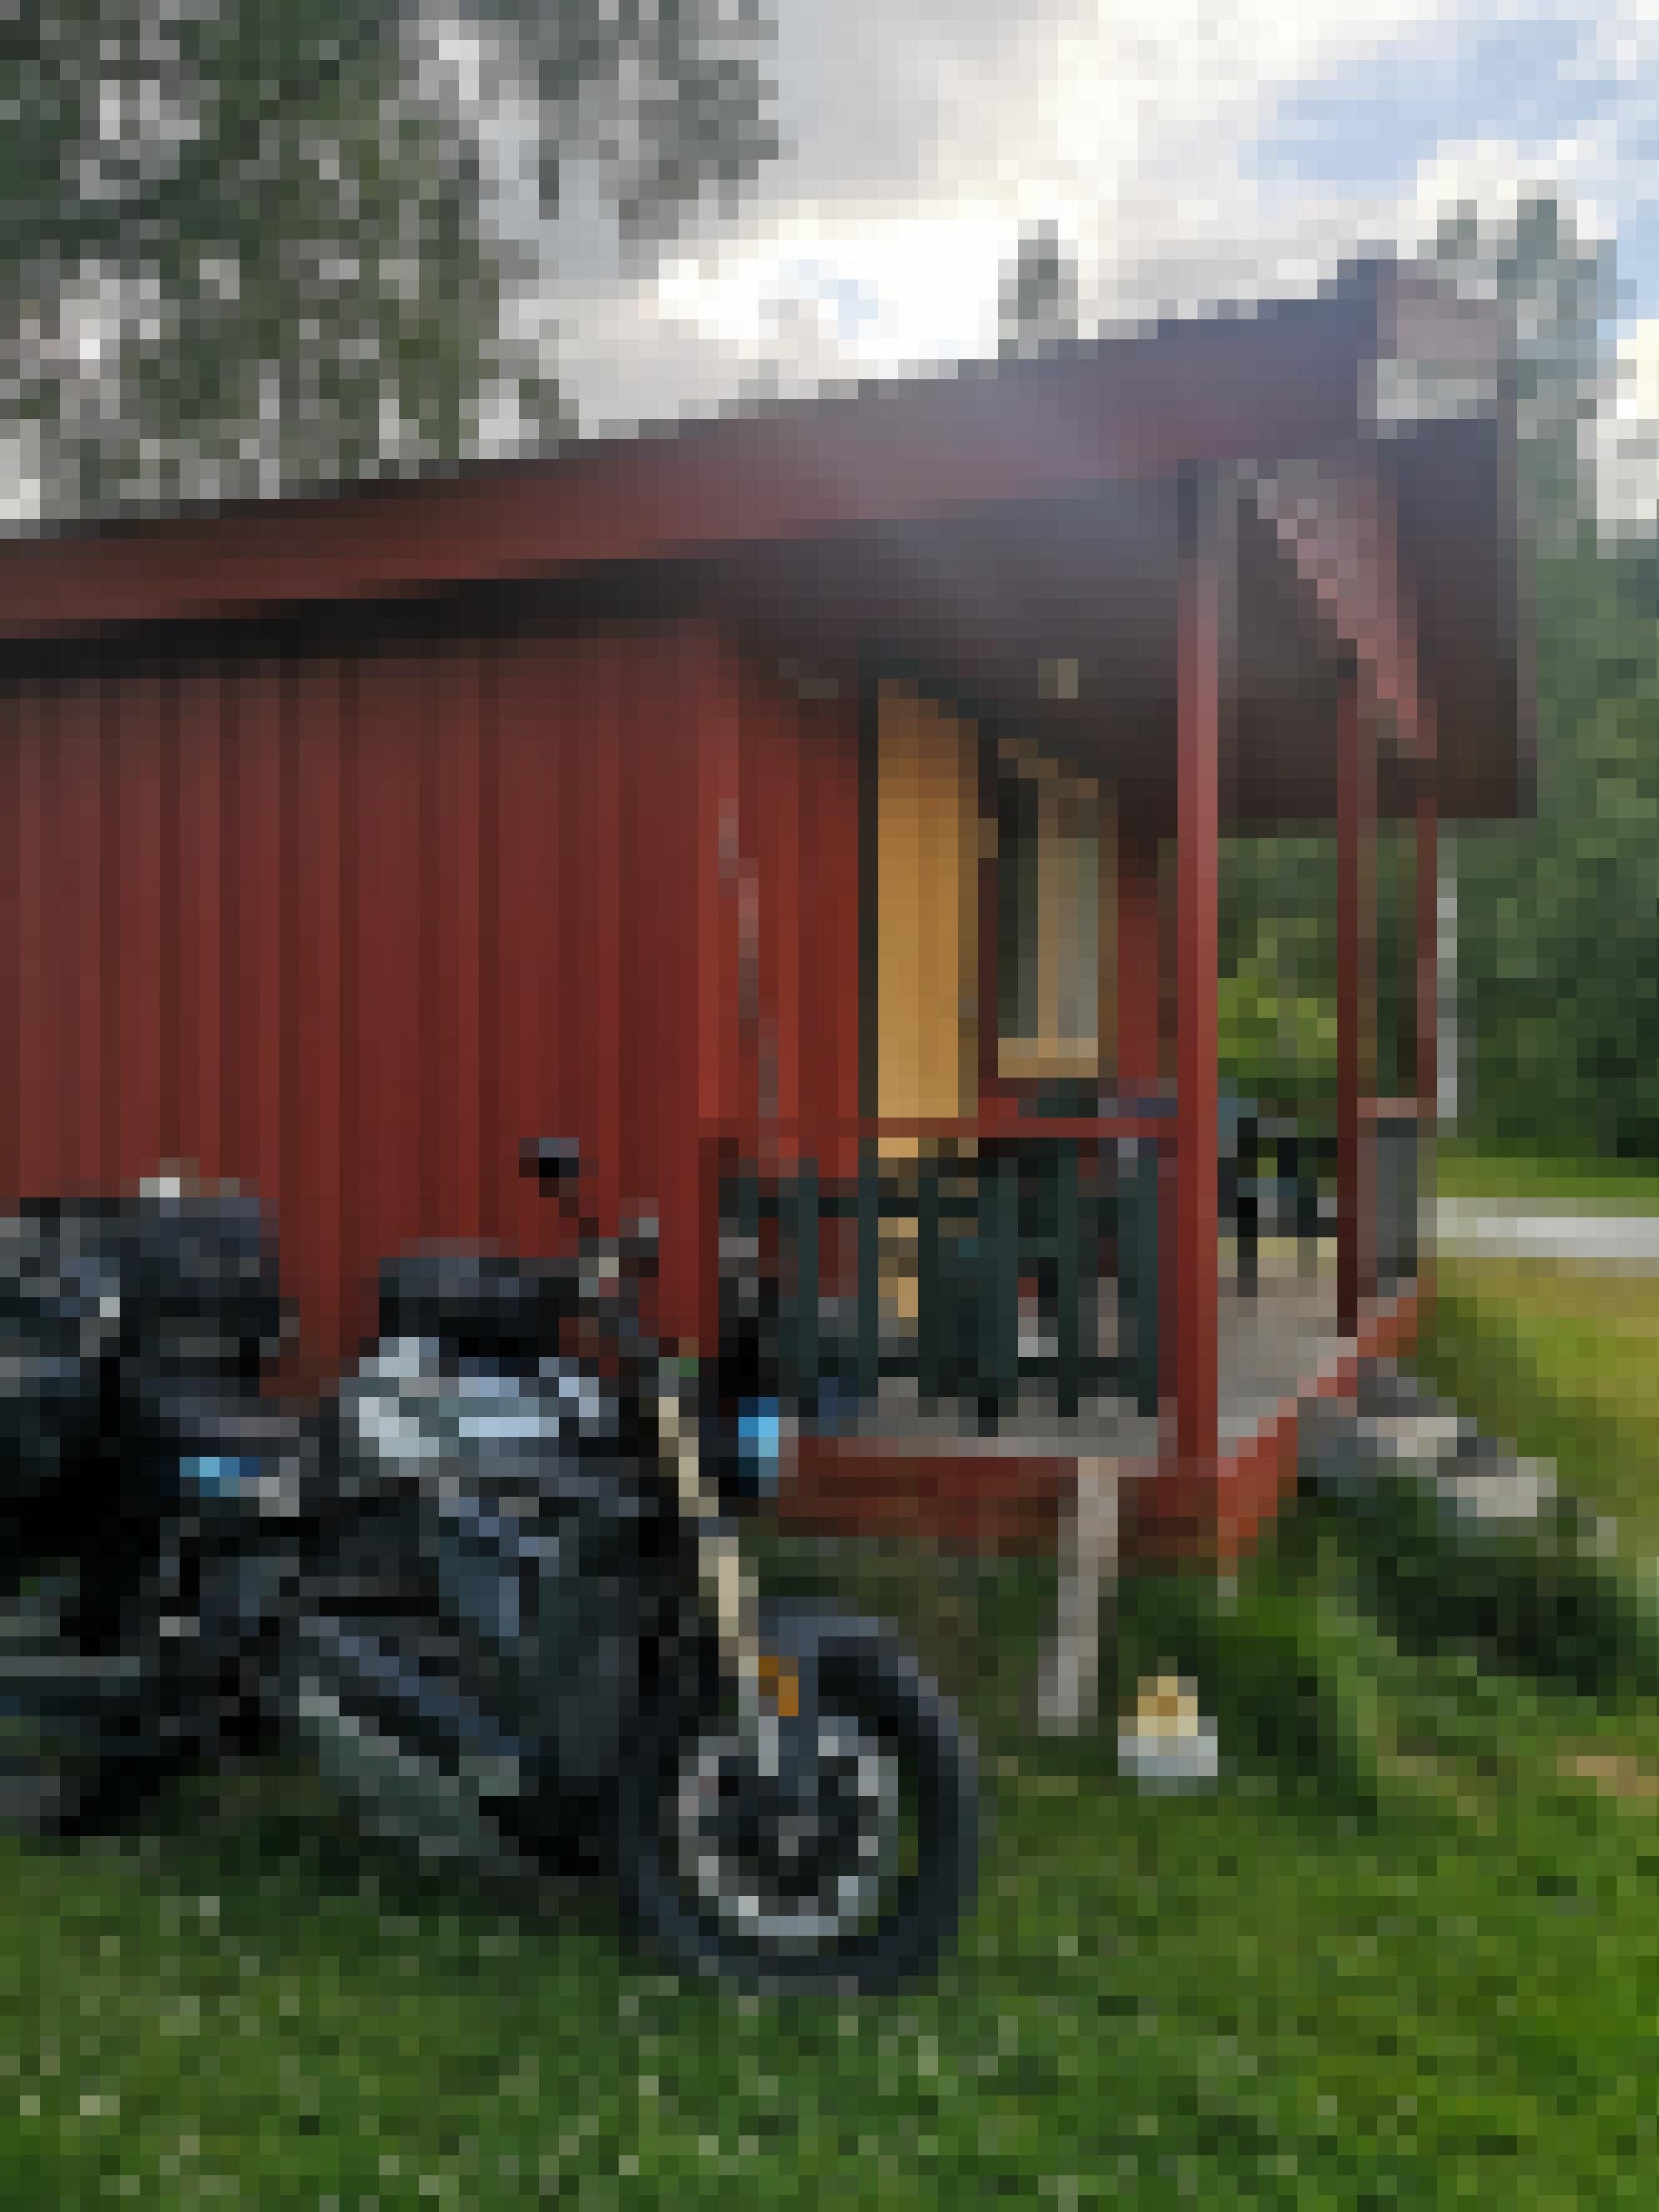 Elektromotorrad parkt vor einer Holzhütte.